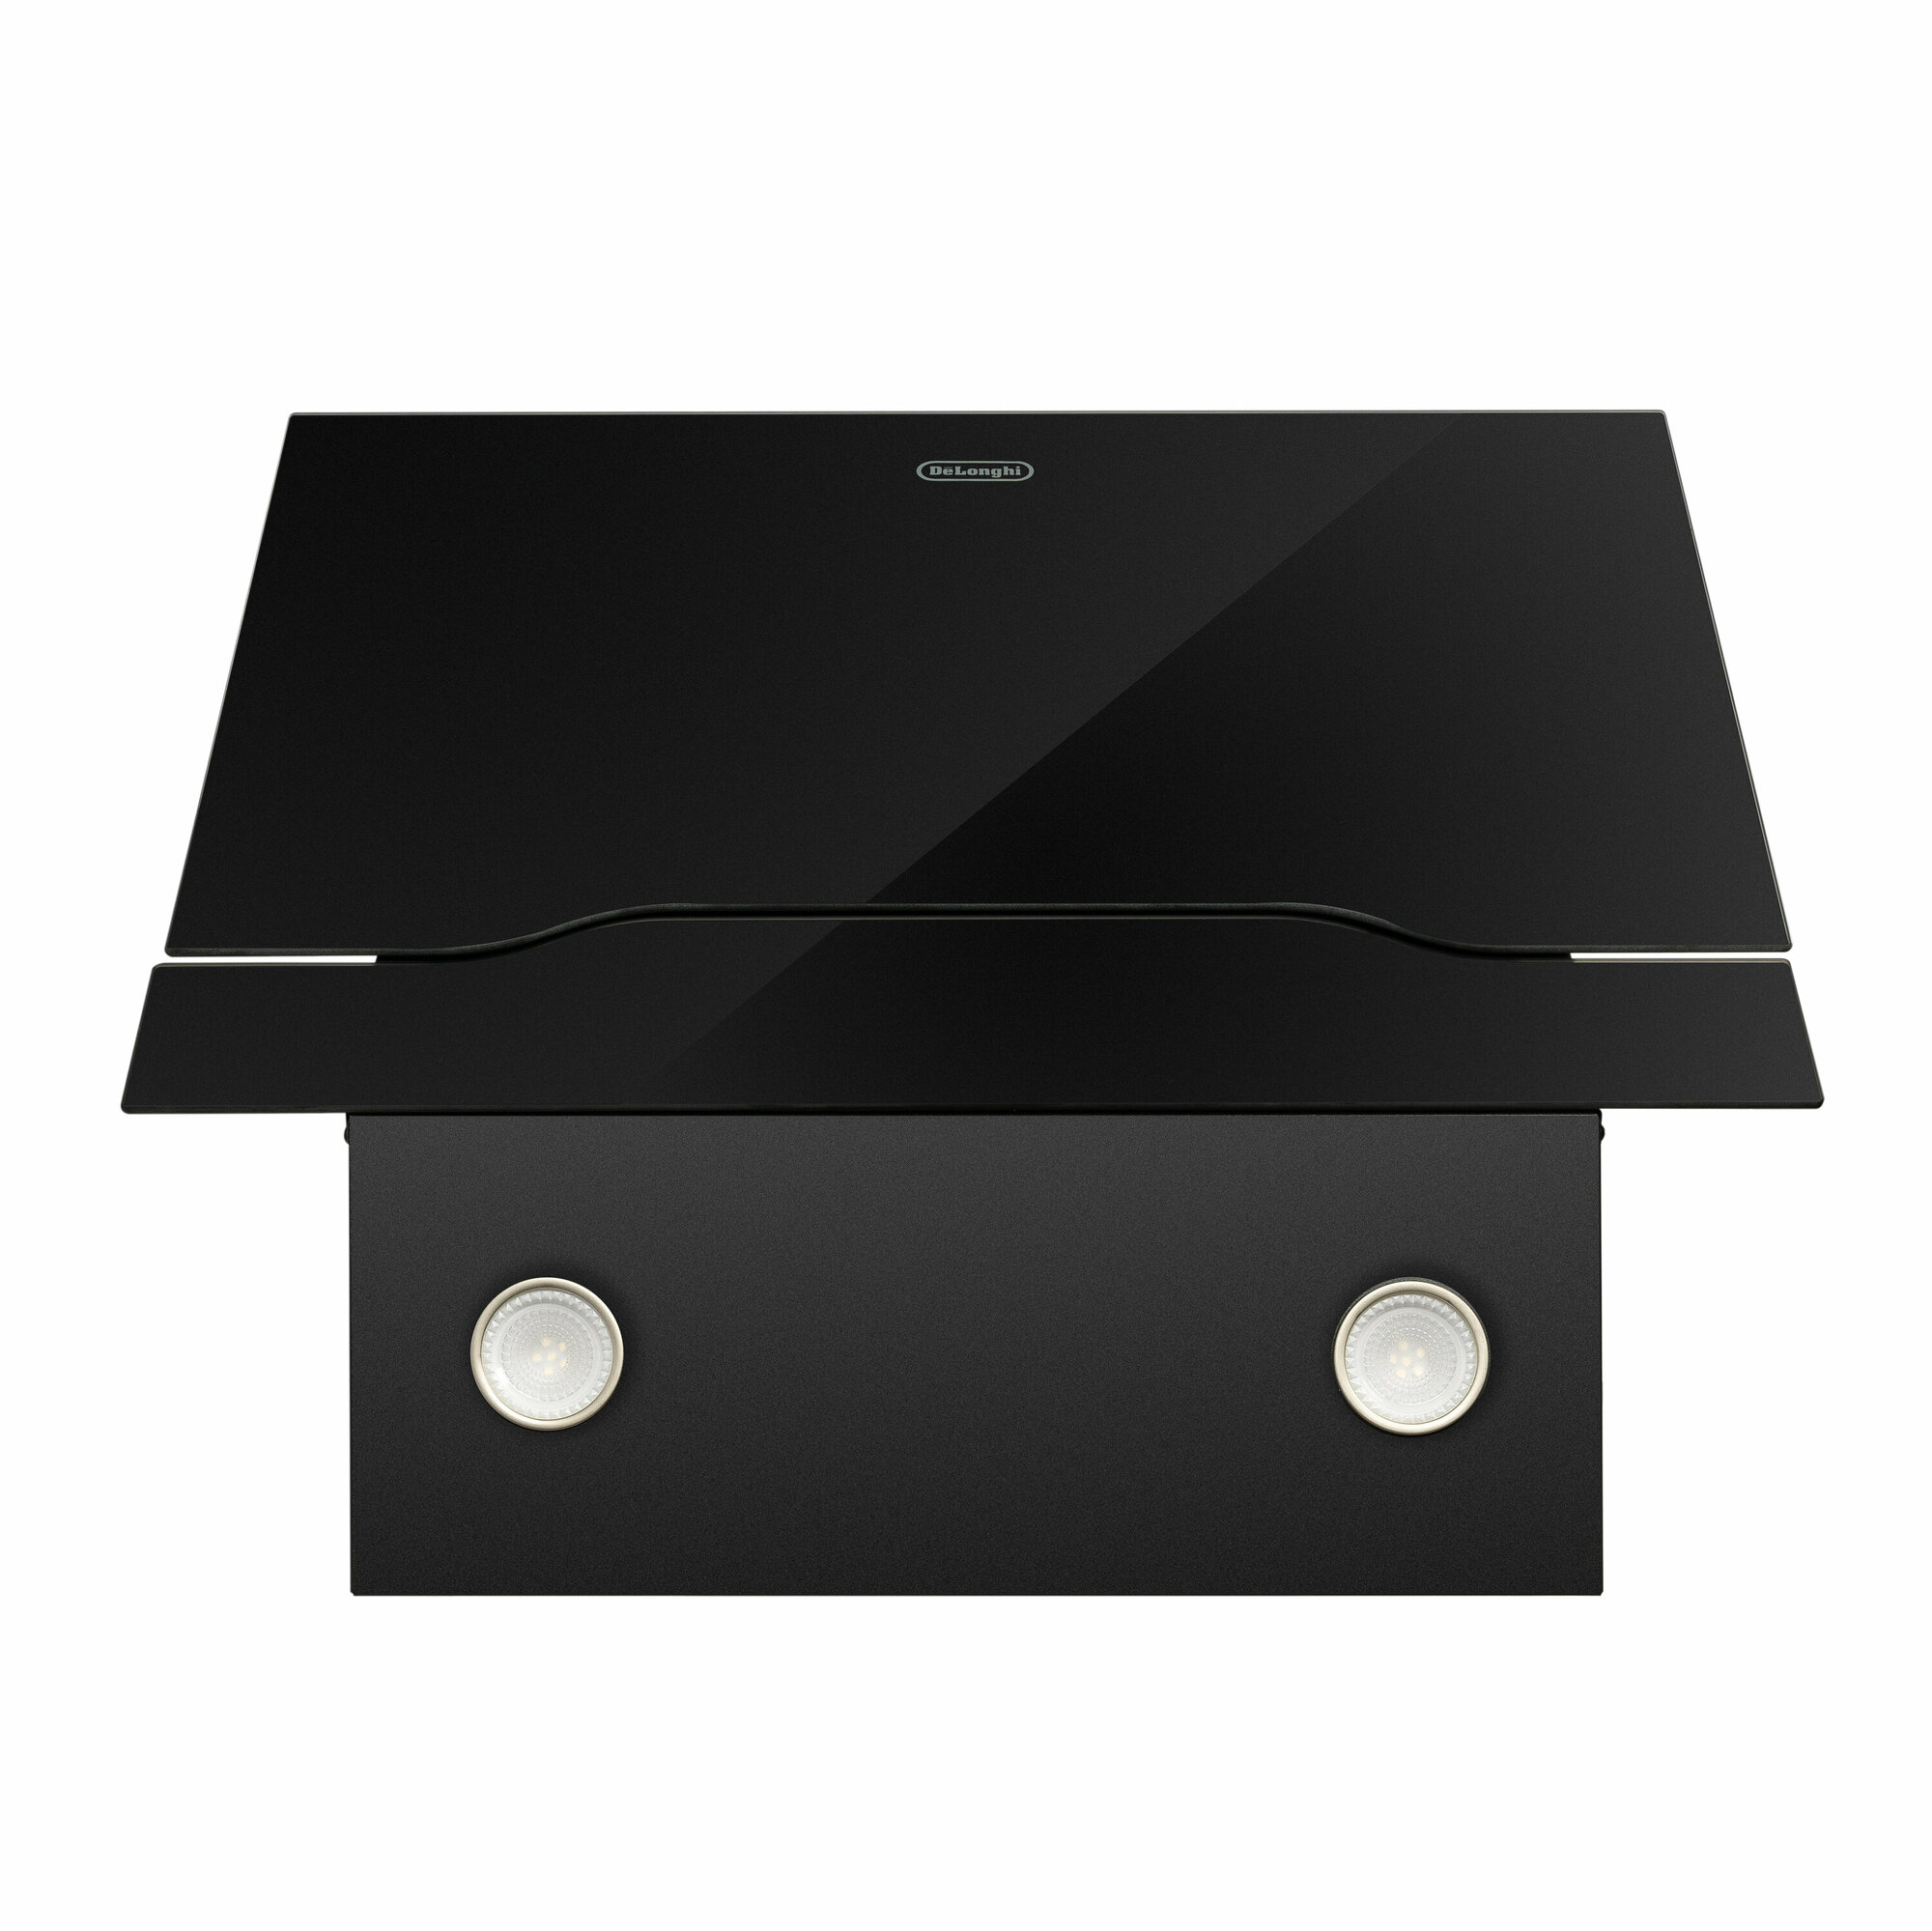 Наклонная стеклянная кухонная вытяжка DeLonghi Linea 608 NB, 60 см, черная